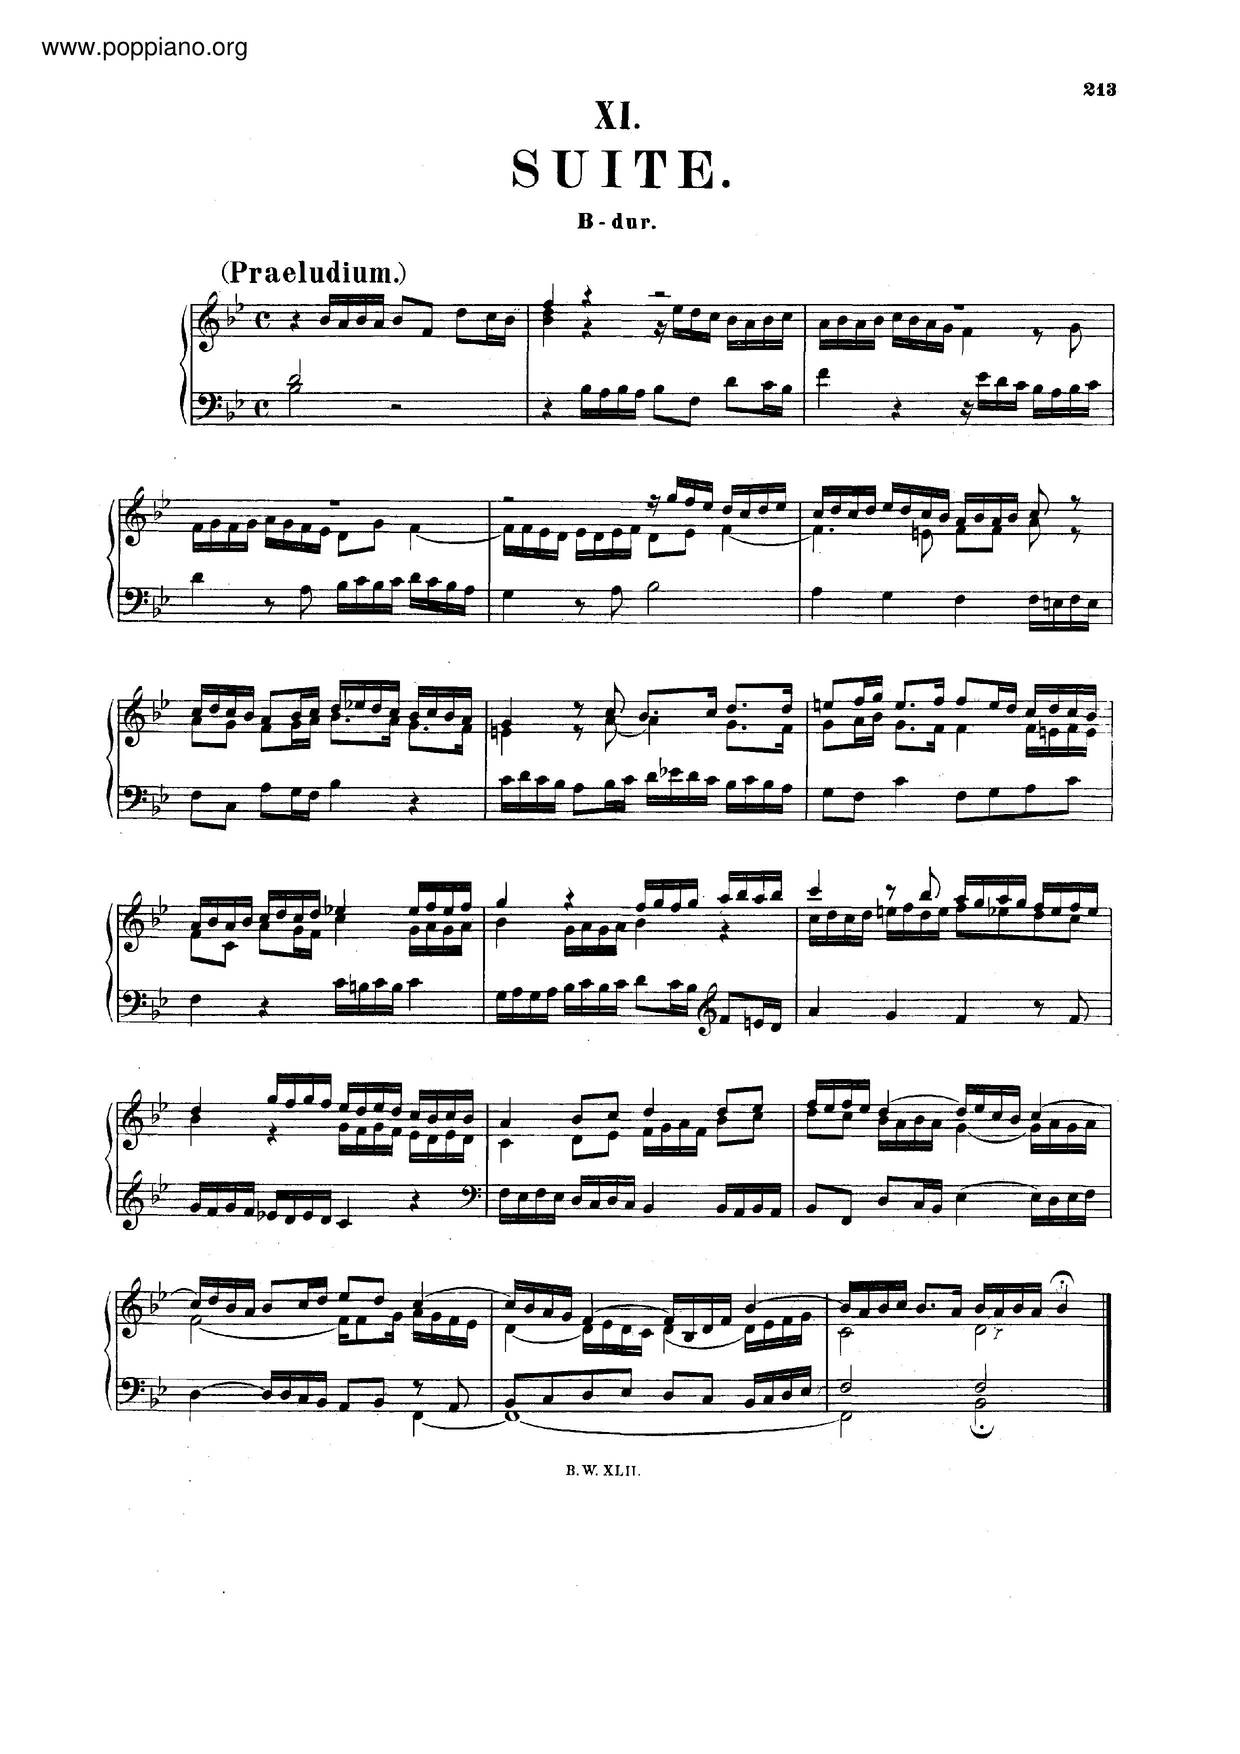 Suite In B-Flat Major, BWV 821 Score